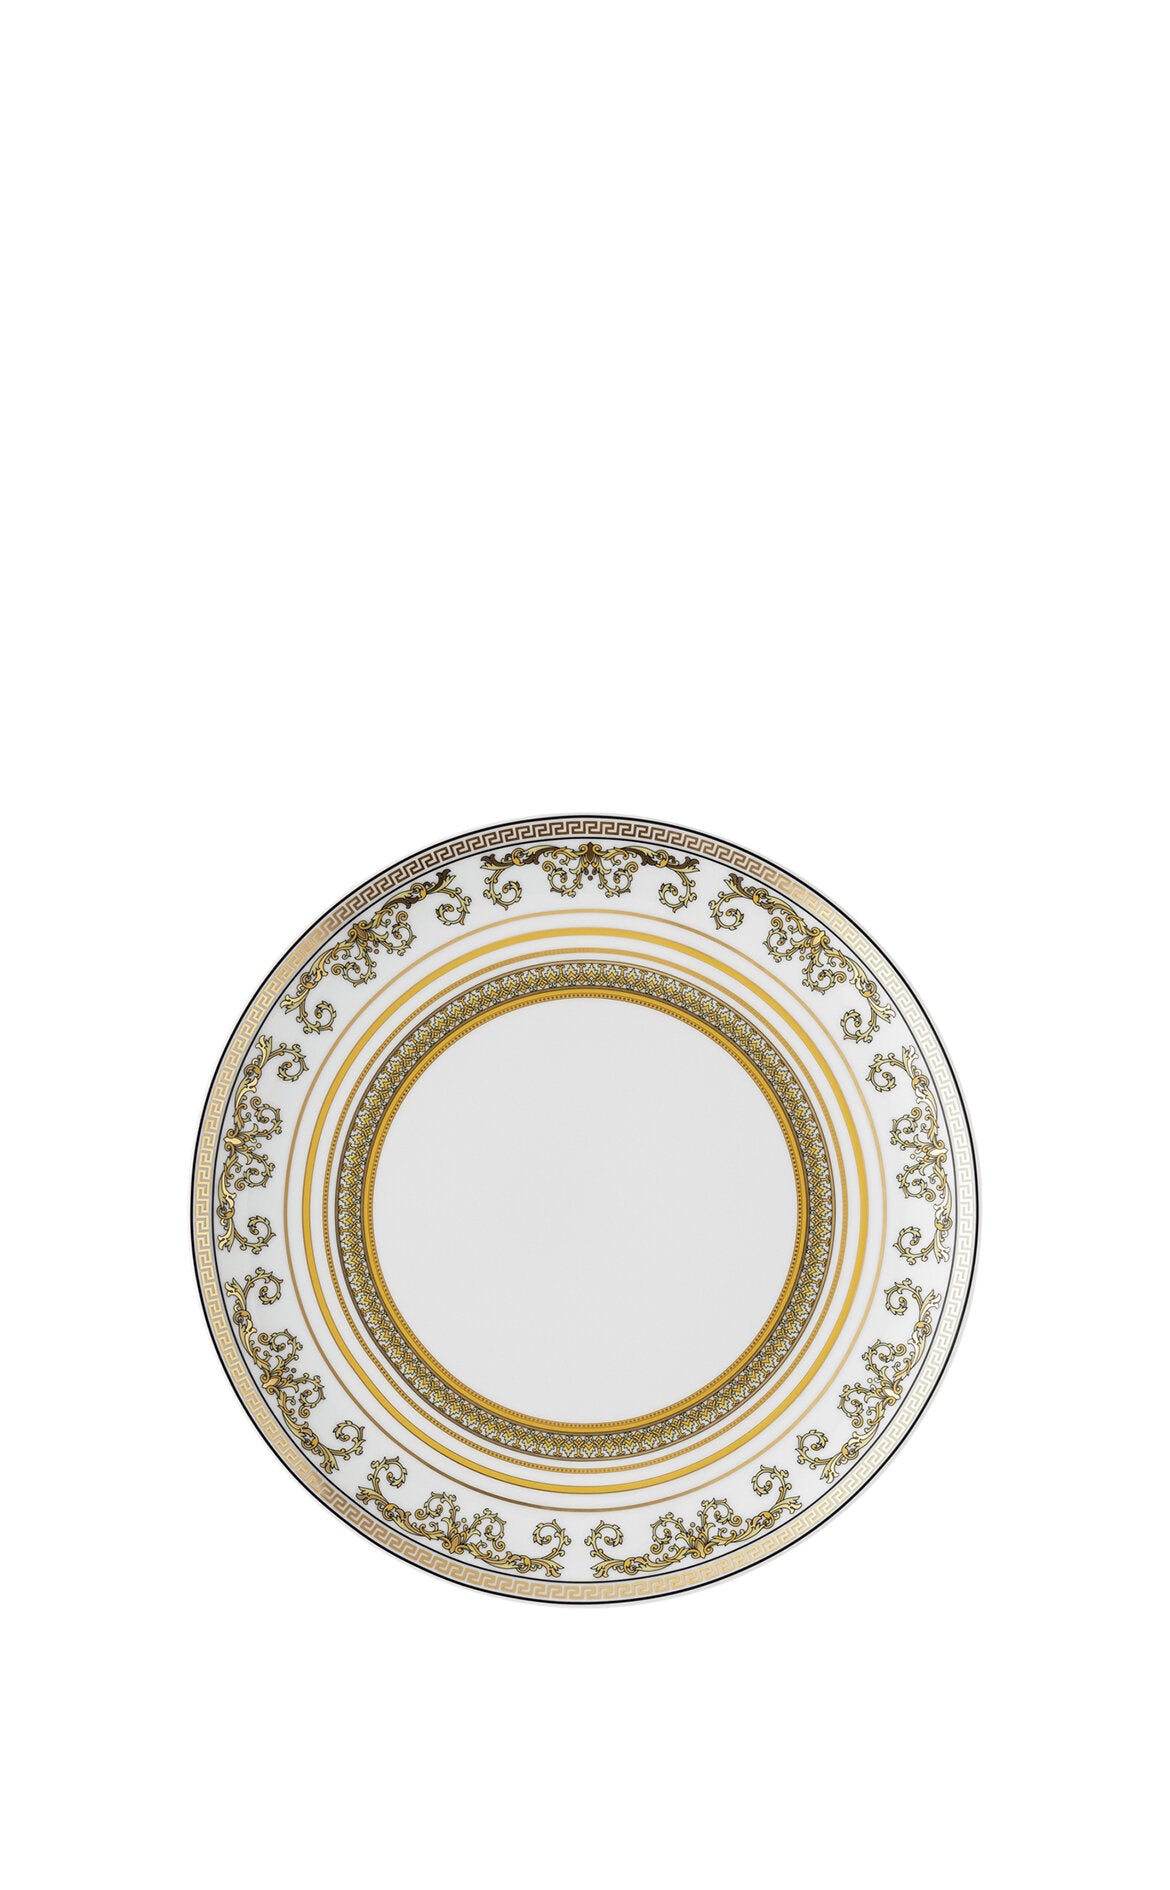 VERSACE Virtus Gala Beyaz Porselen Yemek Tabağı 28 cm D’Maison 